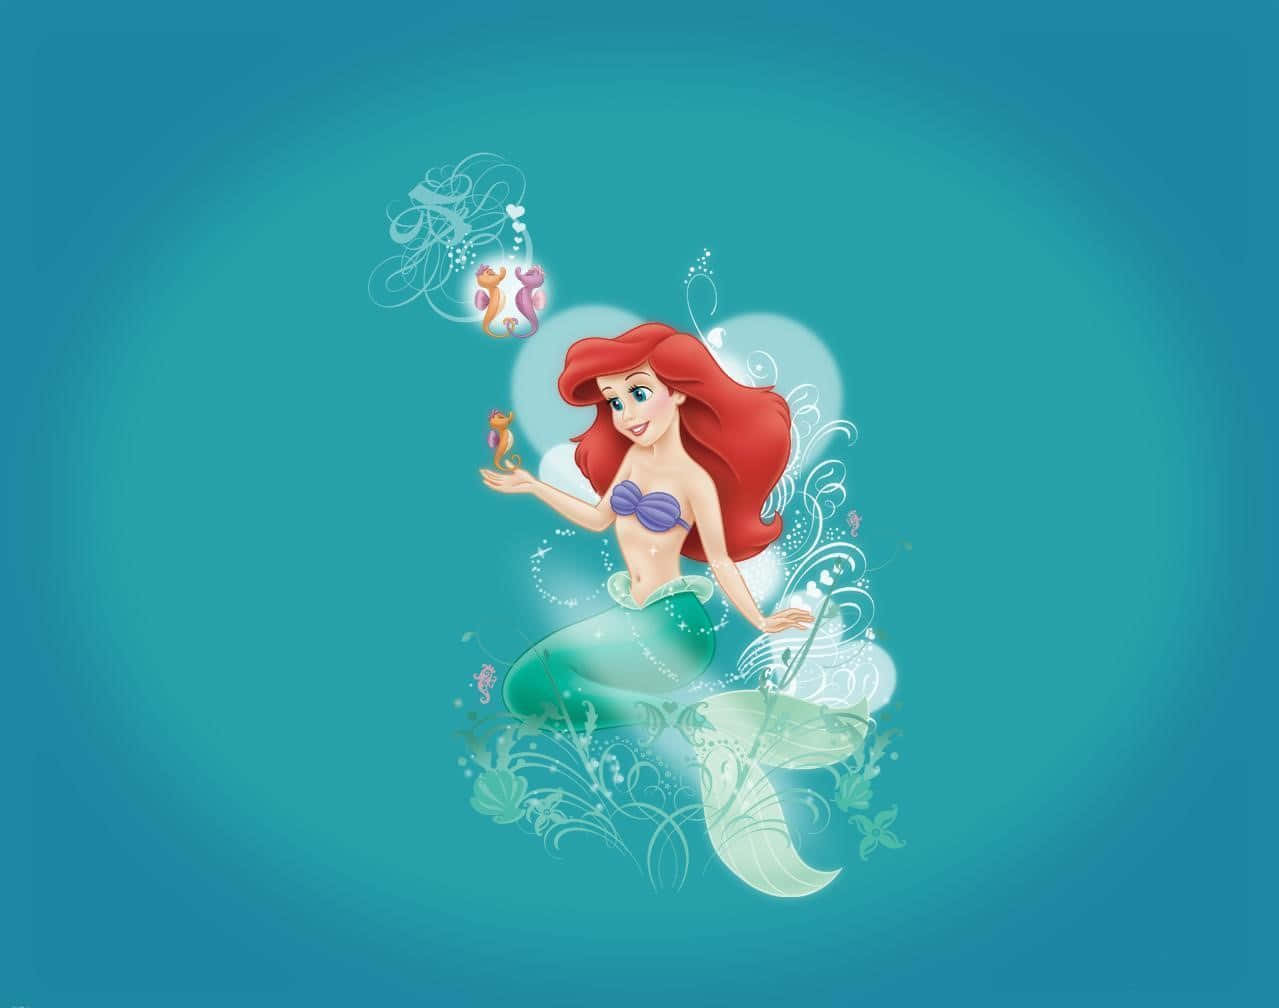 Disney Prinsesse Ariel Fra Little Mermaid Scene Wallpaper Wallpaper